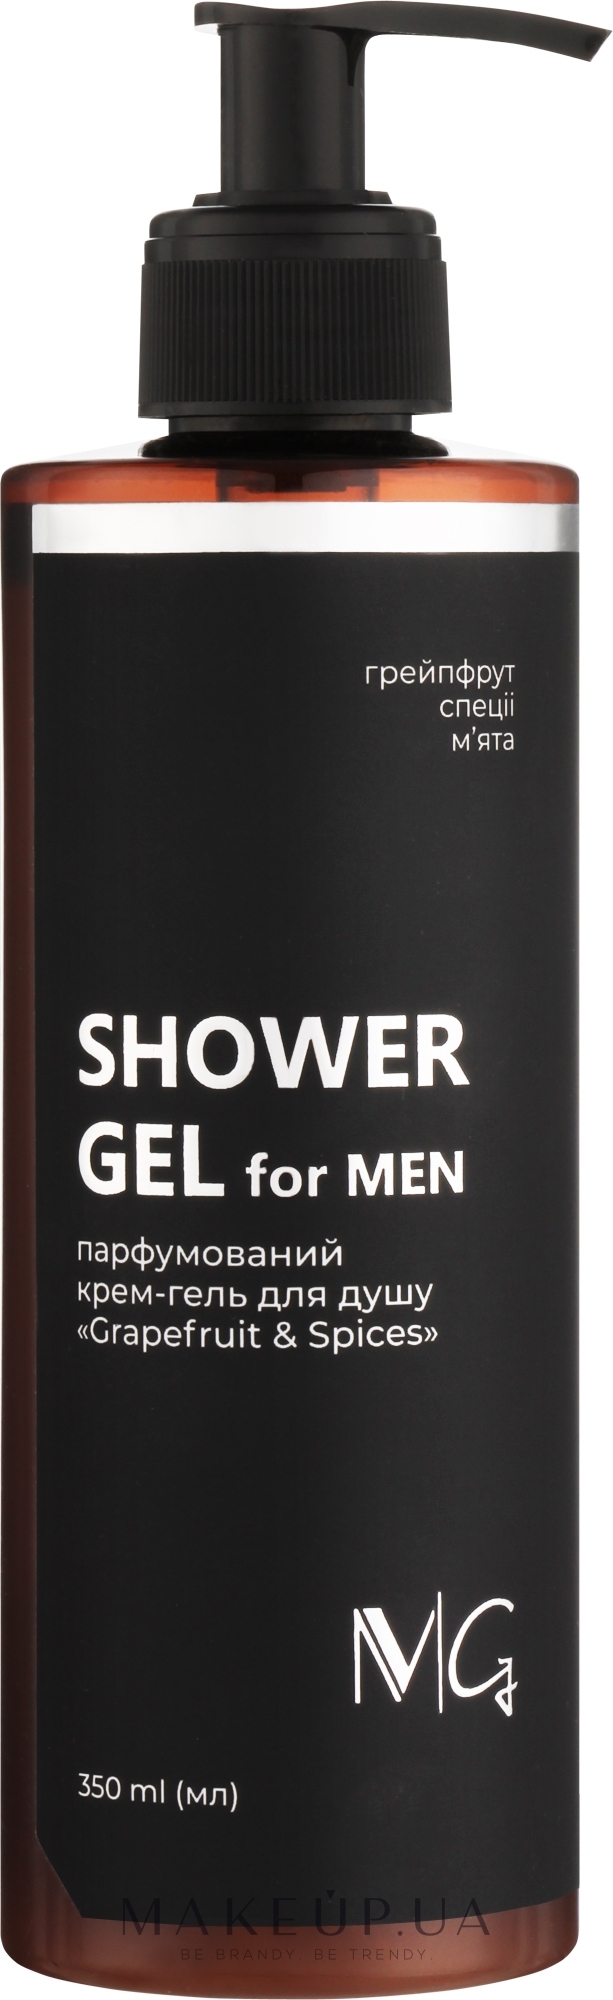 Парфюмированный мужской крем-гель для душа - MG Spa Grapefruit & Spices Shower Gel For Men — фото 350ml